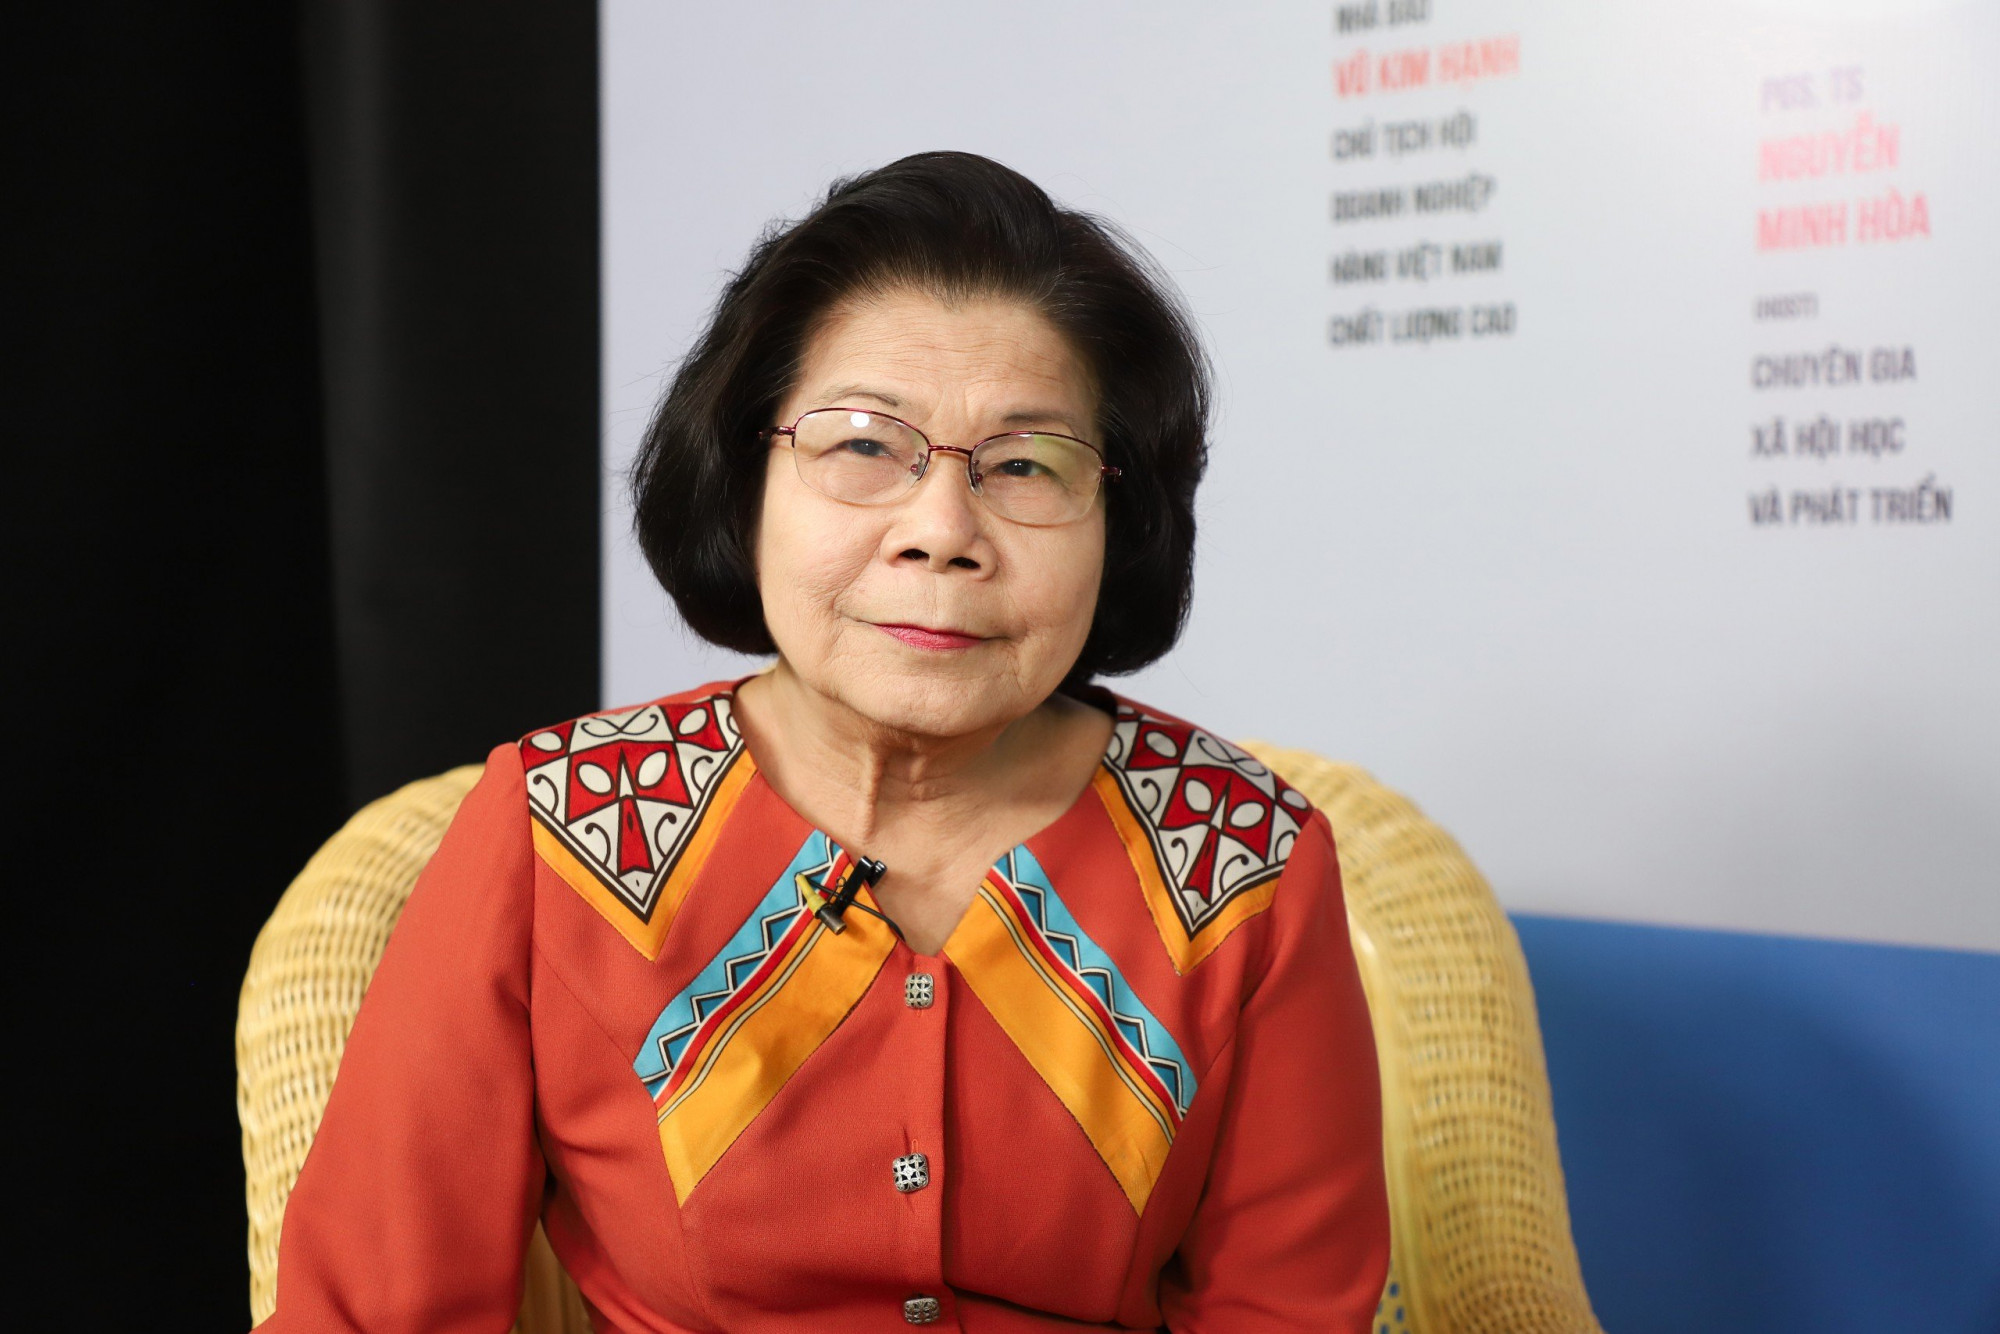 Bà Vũ Kim Hạnh - Chủ tịch Hội doanh nghiệp hàng Việt Nam chất lượng cao